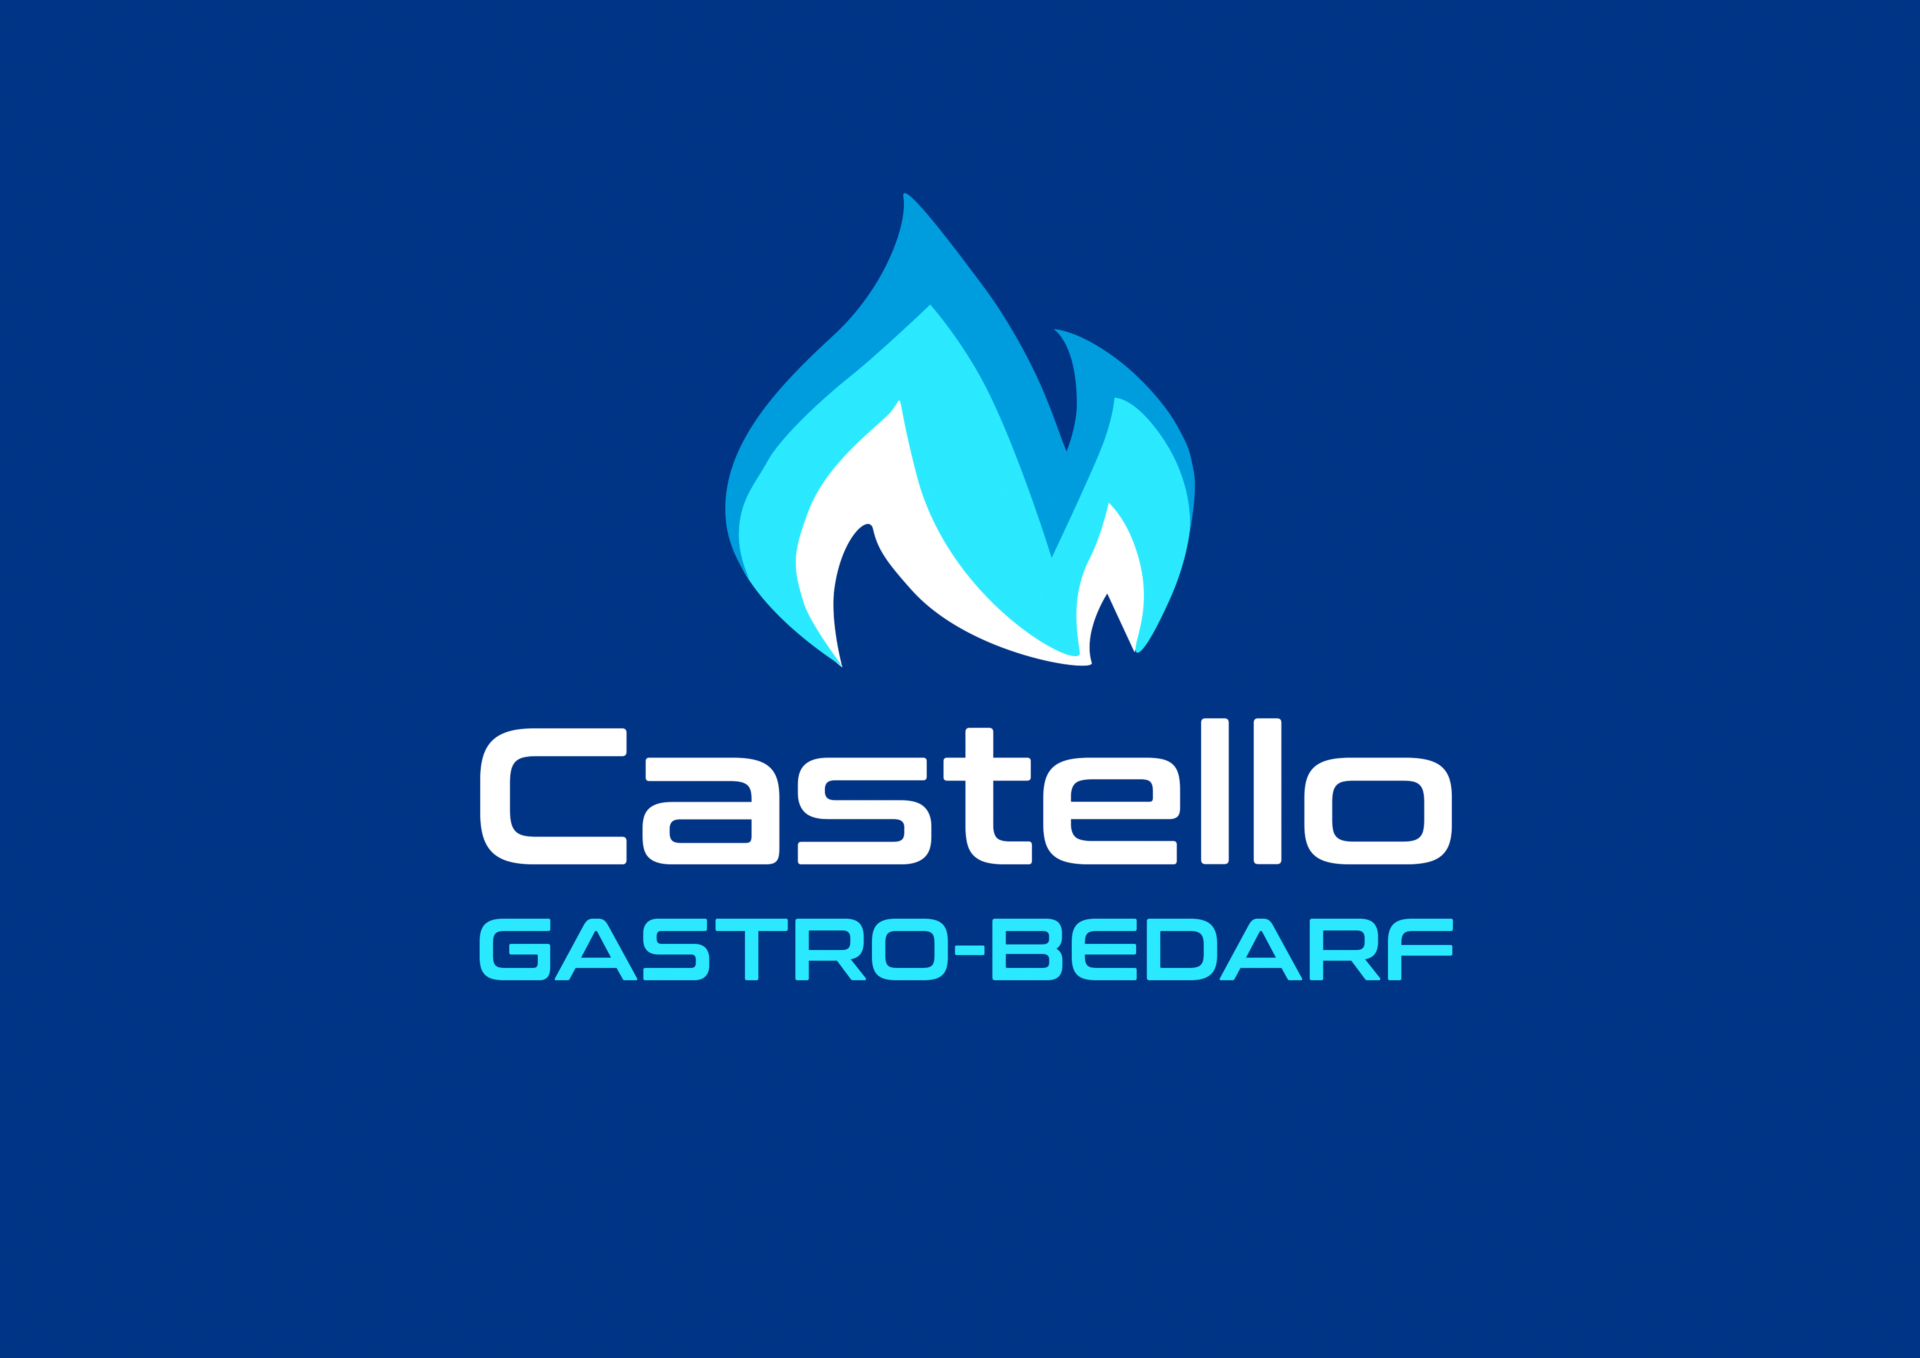 Castello-Gastro-Bedarf